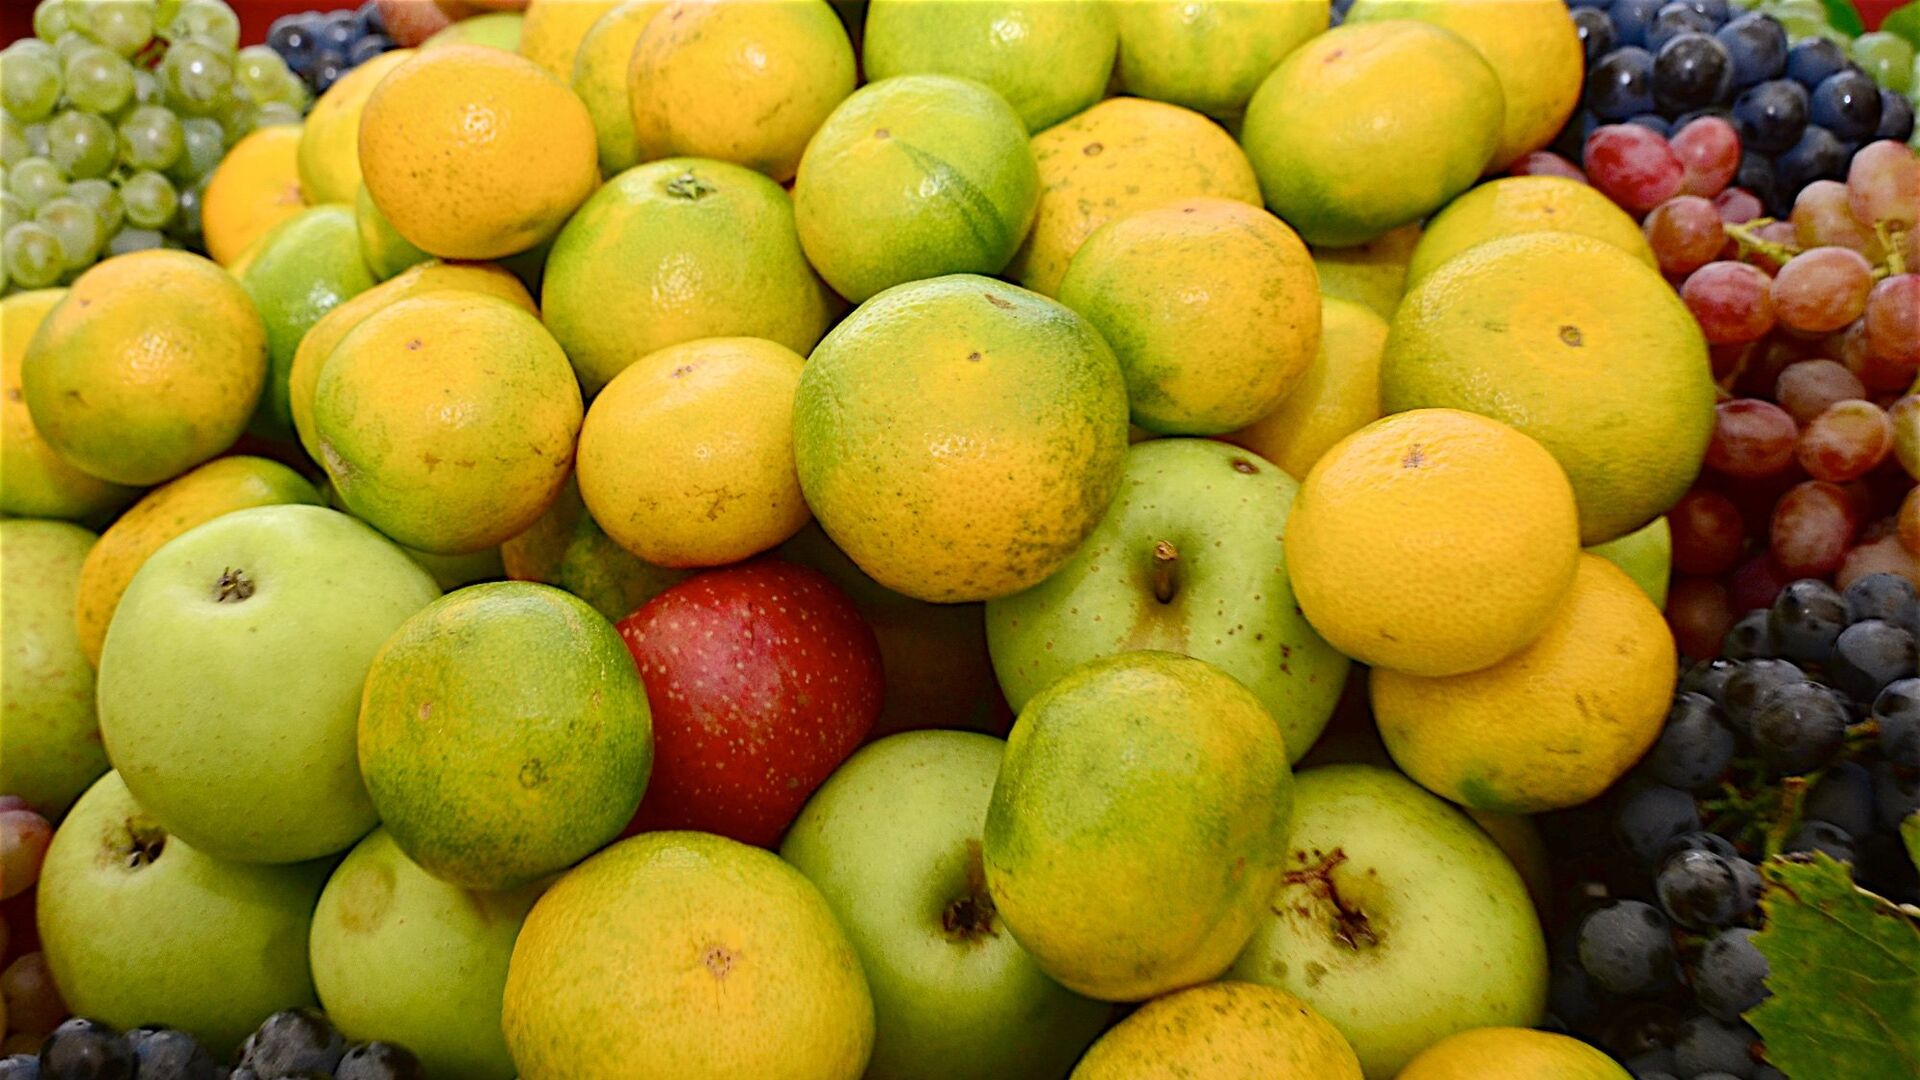 Мандарины, лимоны и фрукты на сельскохозяйственной выставке в Аджарии - Sputnik Грузия, 1920, 18.10.2021